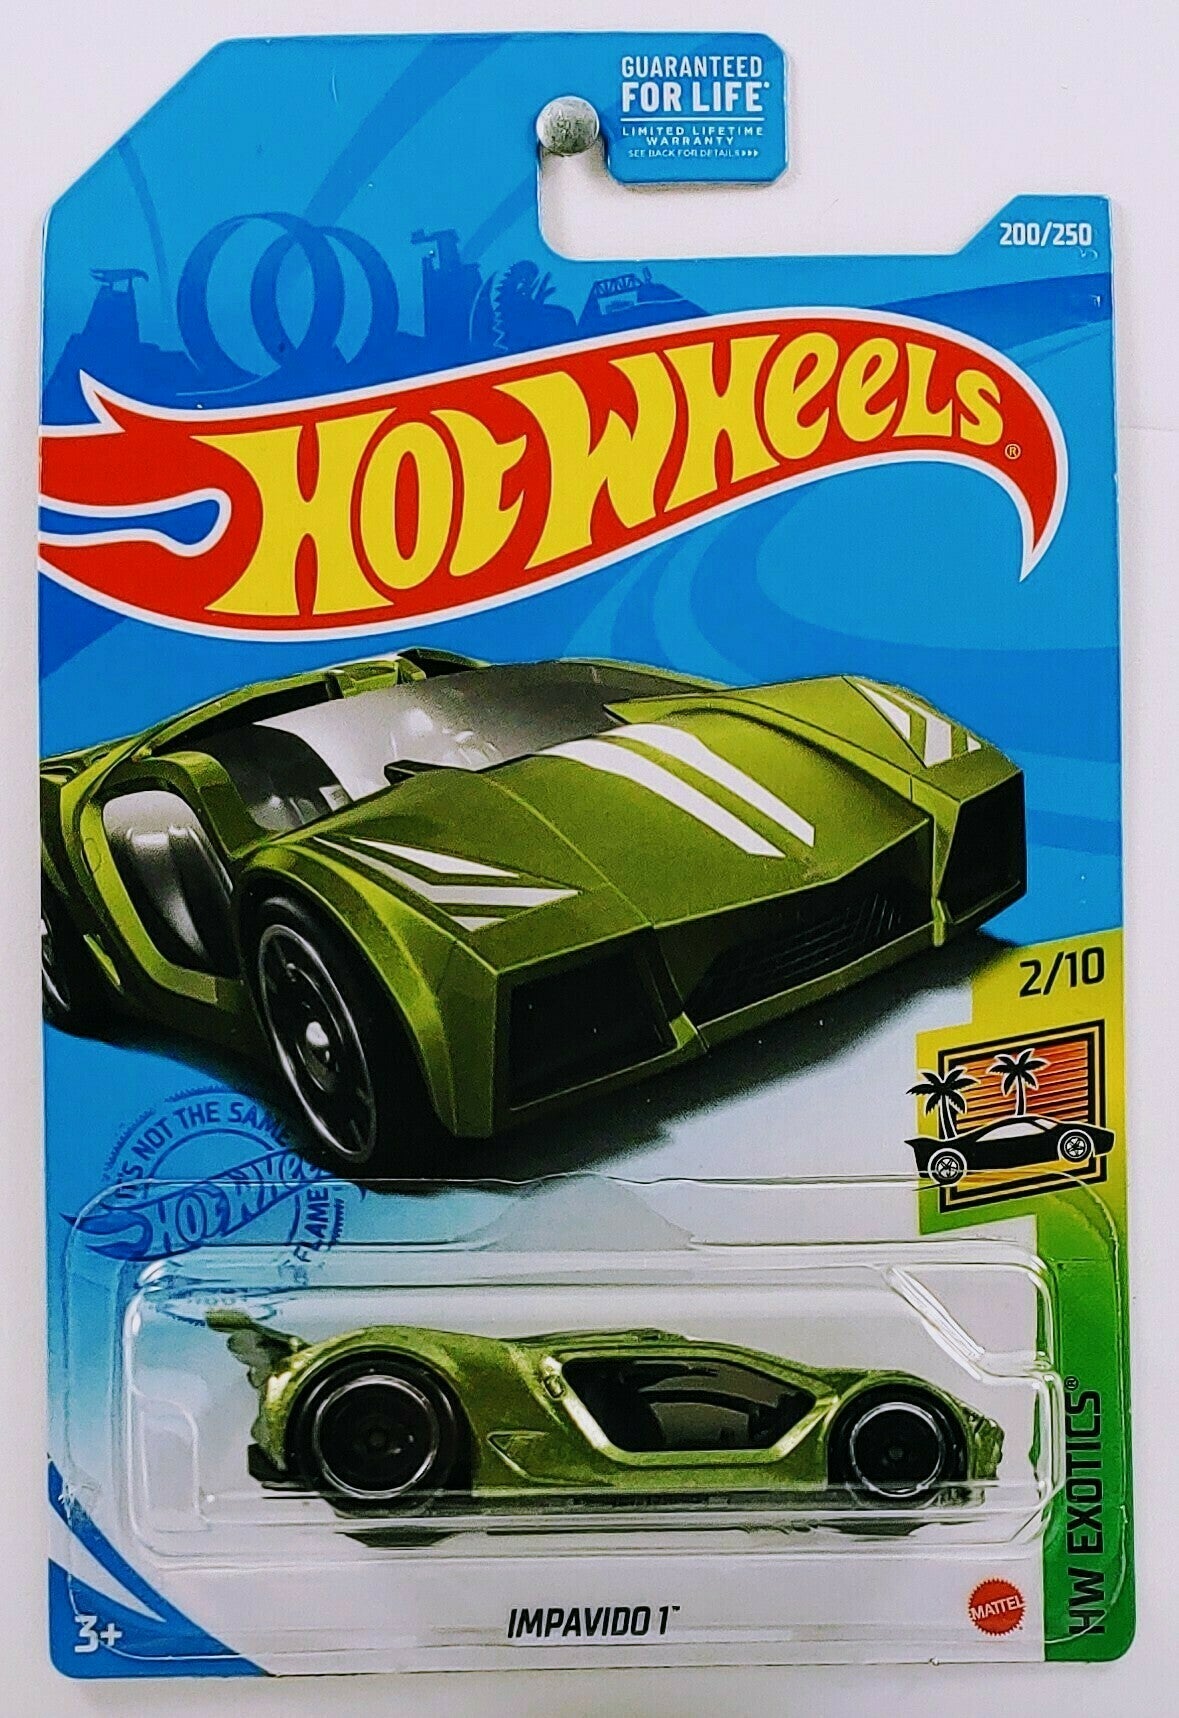 Hot Wheels 2021 - Collector # 200/250 - HW Exotics 2/10 - Impavido 1 - Green